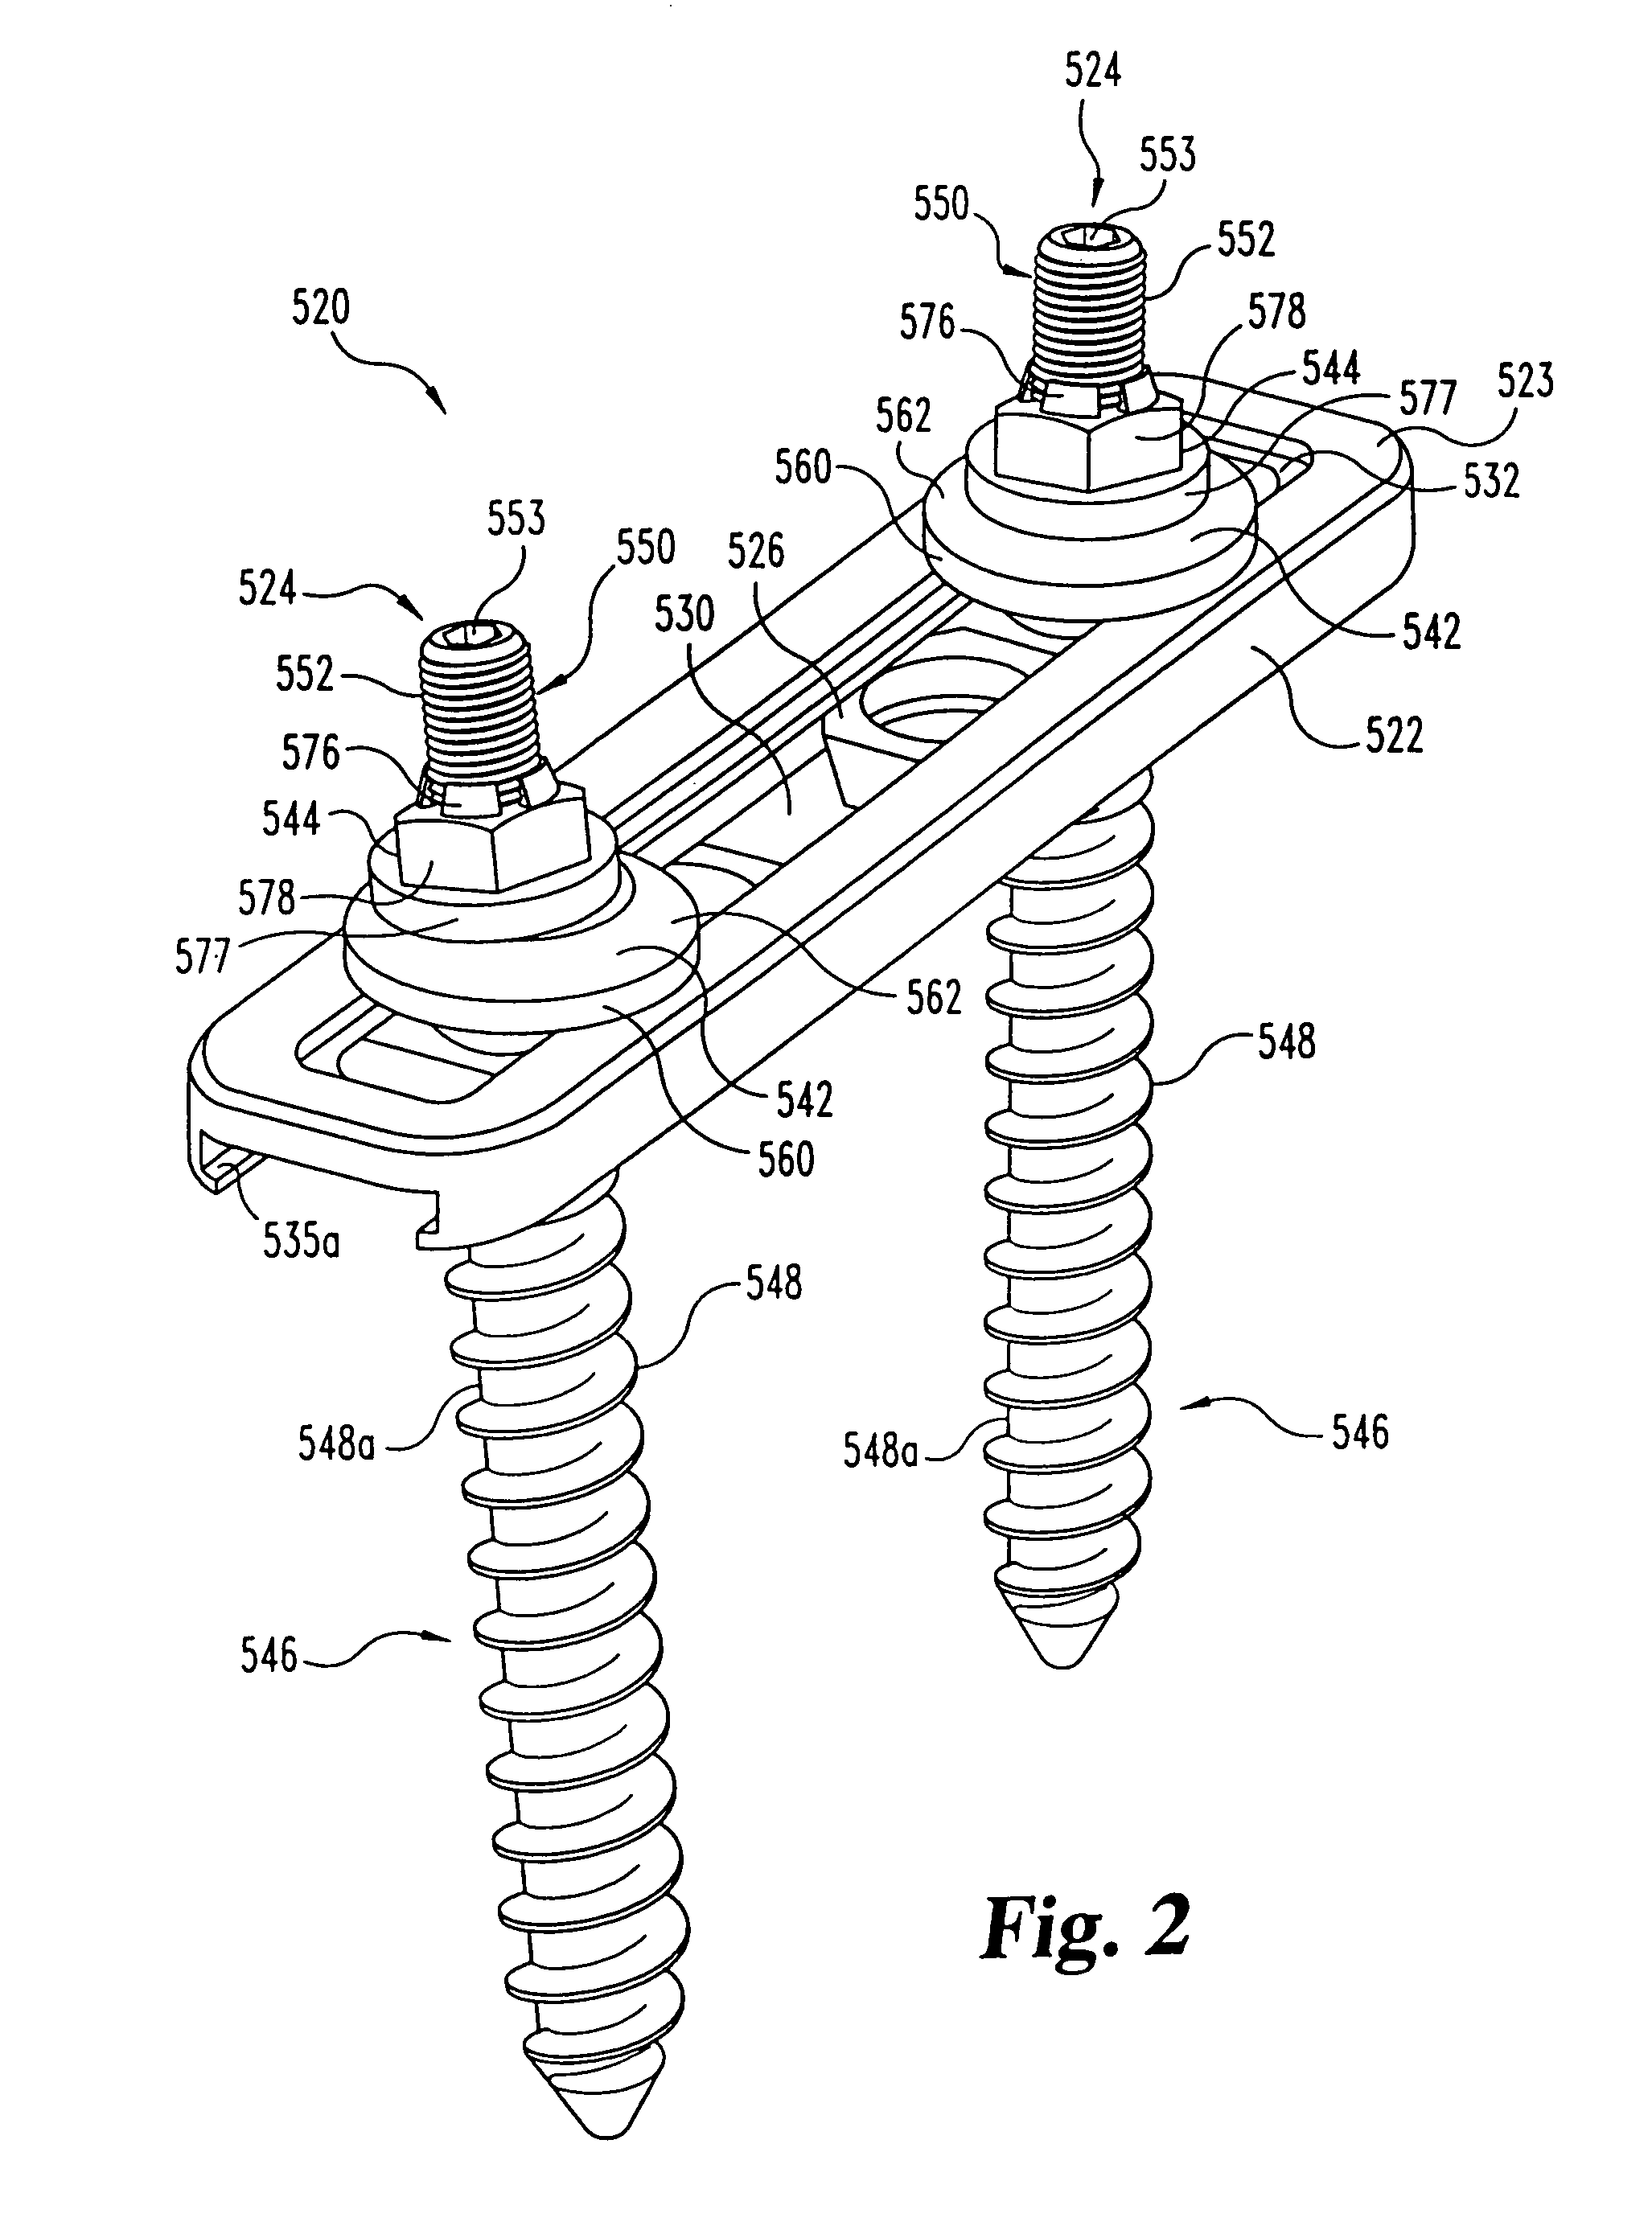 Multi-axial bone anchor system